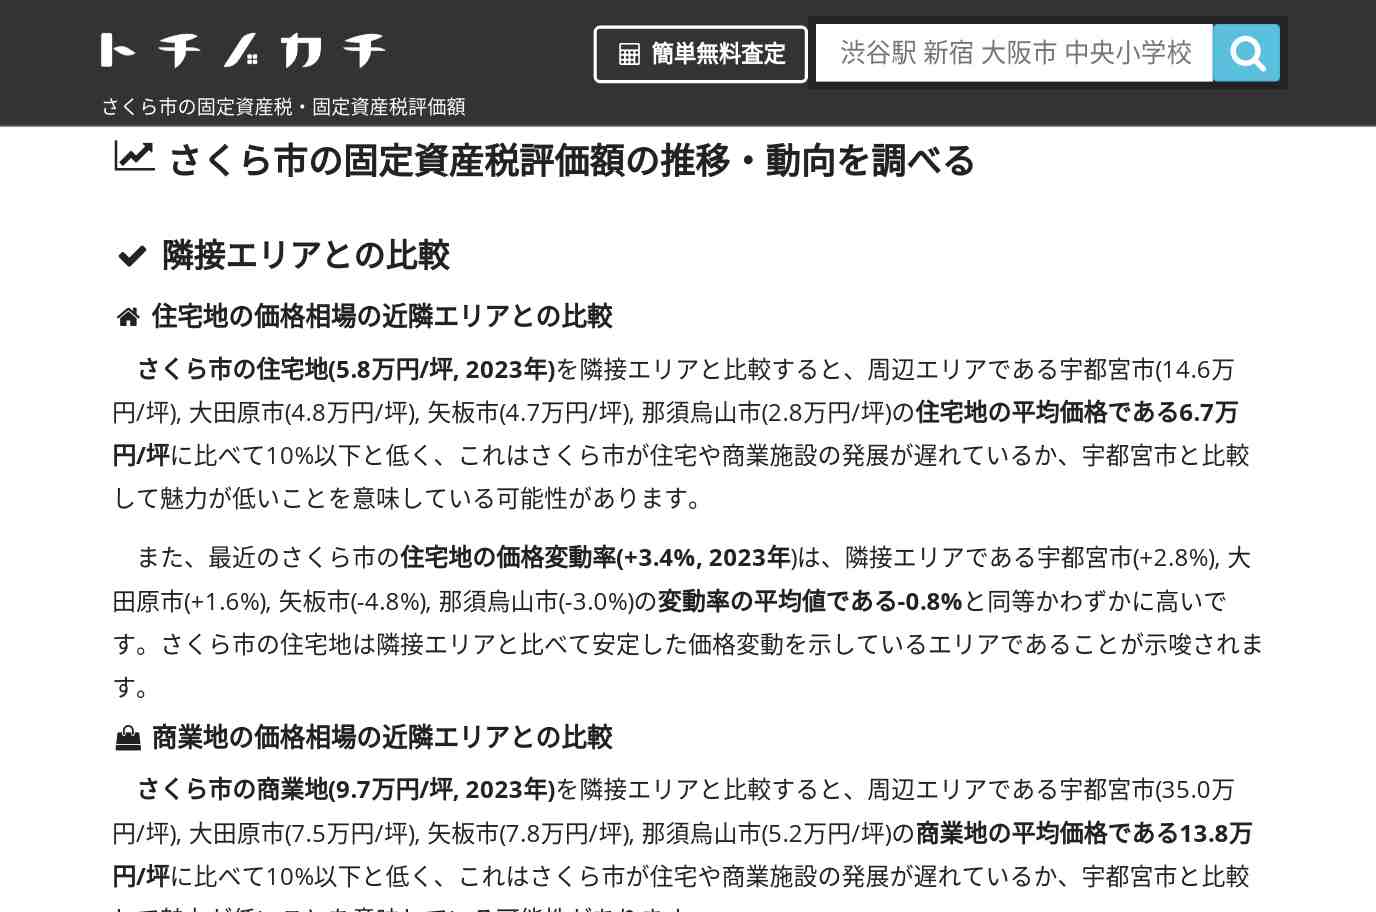 喜連川中学校(栃木県 さくら市)周辺の固定資産税・固定資産税評価額 | トチノカチ